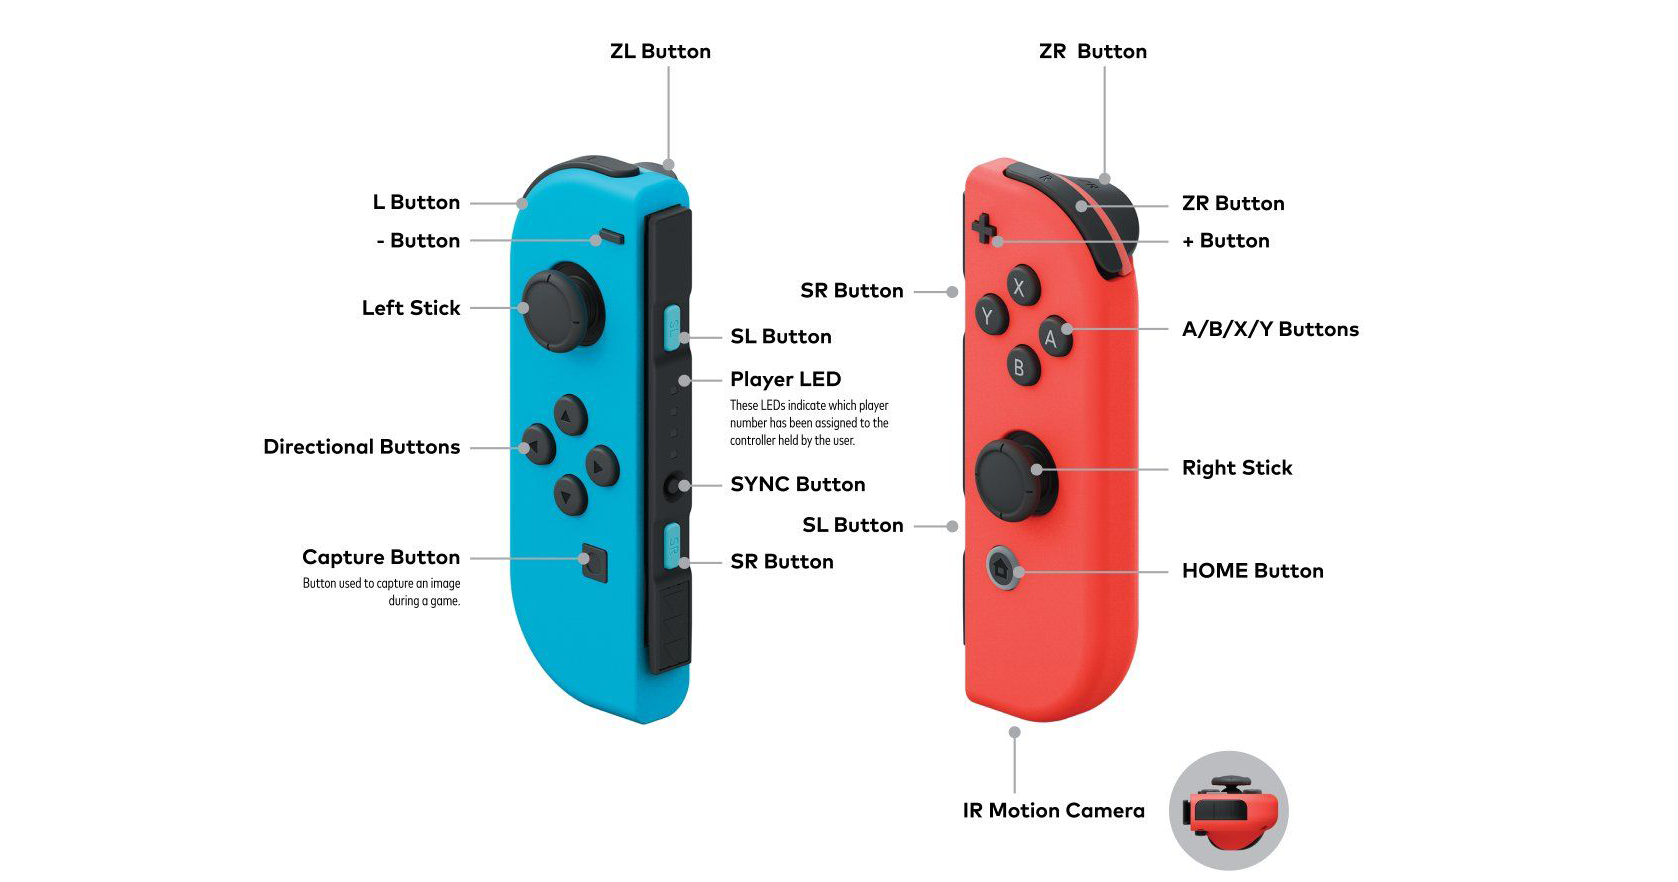 Direct aan de slag met jouw Nintendo controllers!